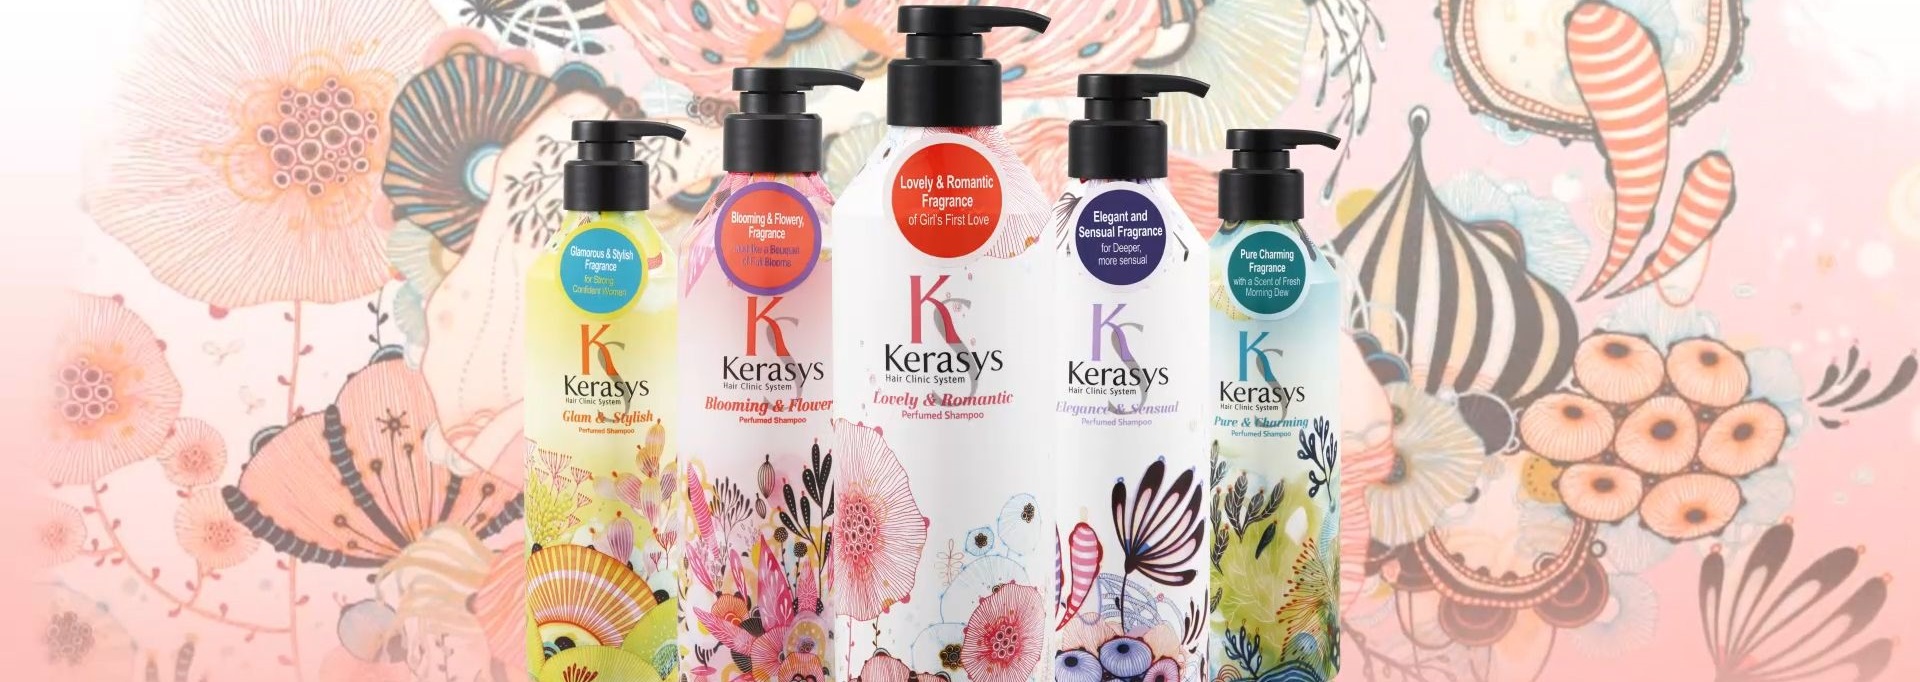 KERASYS Perfume Shampoo - Elegance & Sensual,  600ml